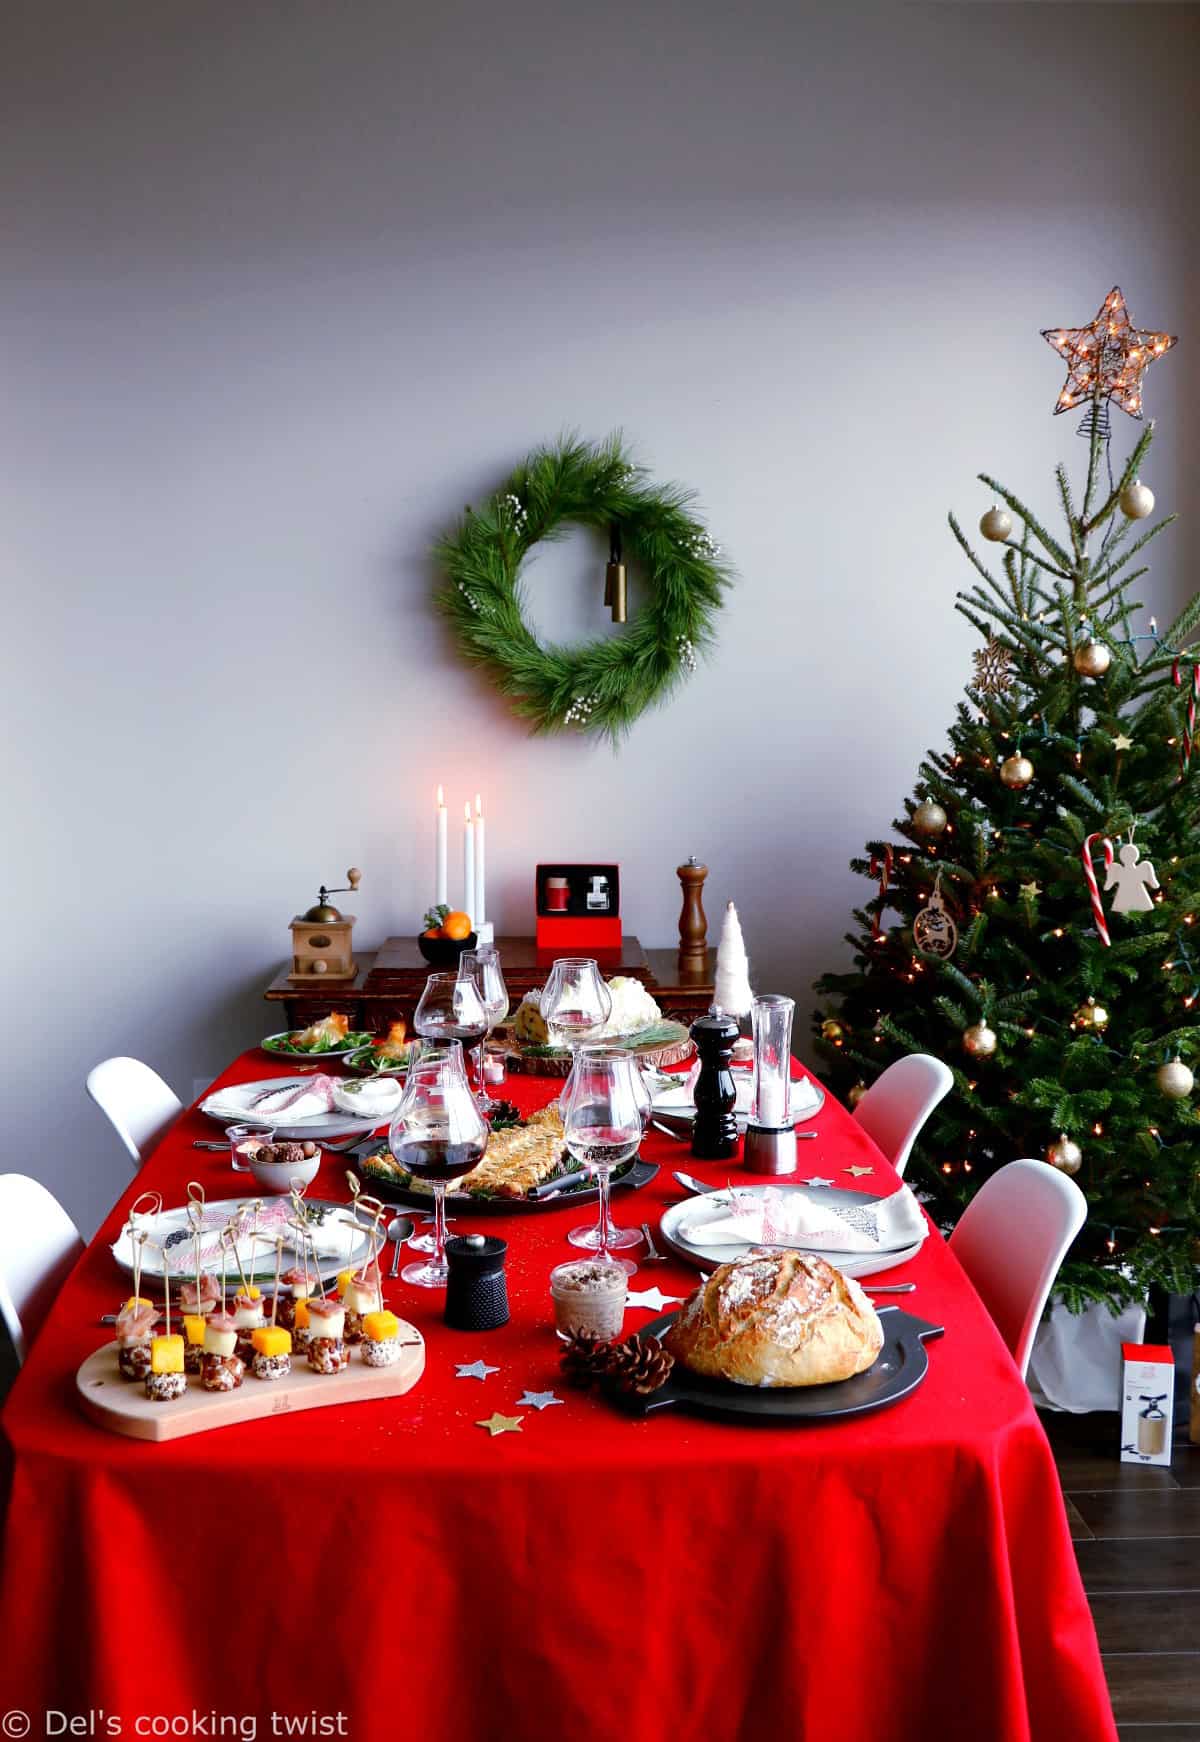 Découvrez ma table de Noël avec Peugeot Saveurs avec des recettes gourmandes et festives, ainsi que de jolies idées de cadeaux.